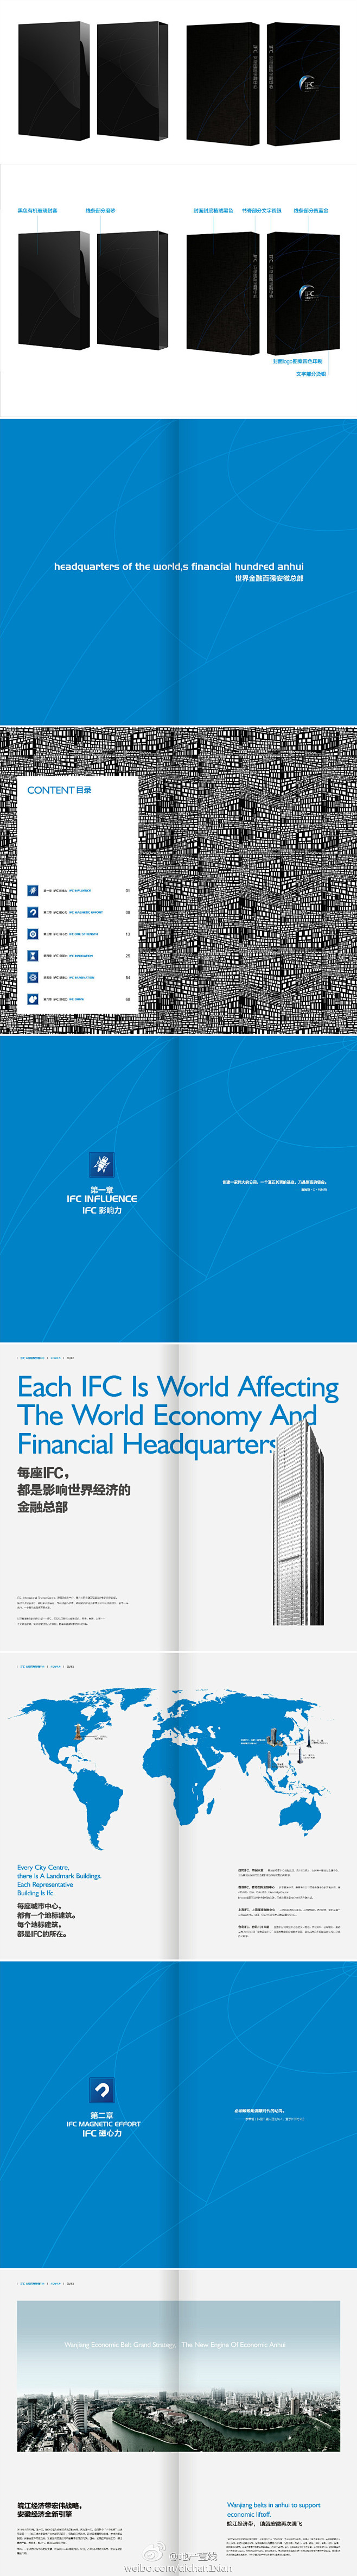 合肥国际金融中心IFC 楼书